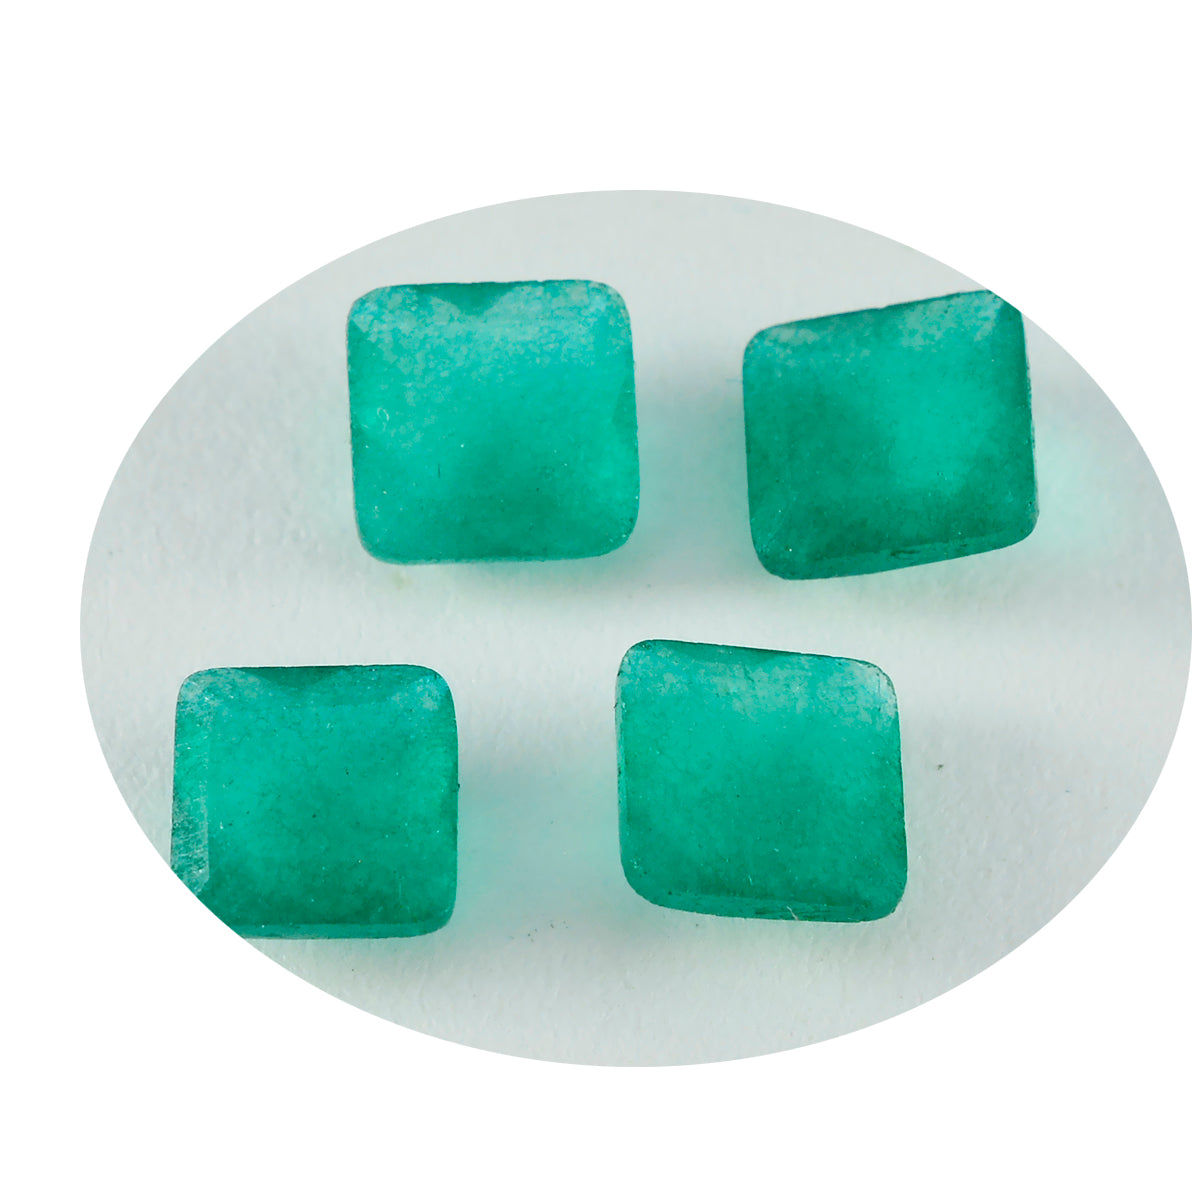 riyogems 1pc 本物のグリーン ジャスパー ファセット 14x14 mm 正方形の形状 aaa 品質の宝石